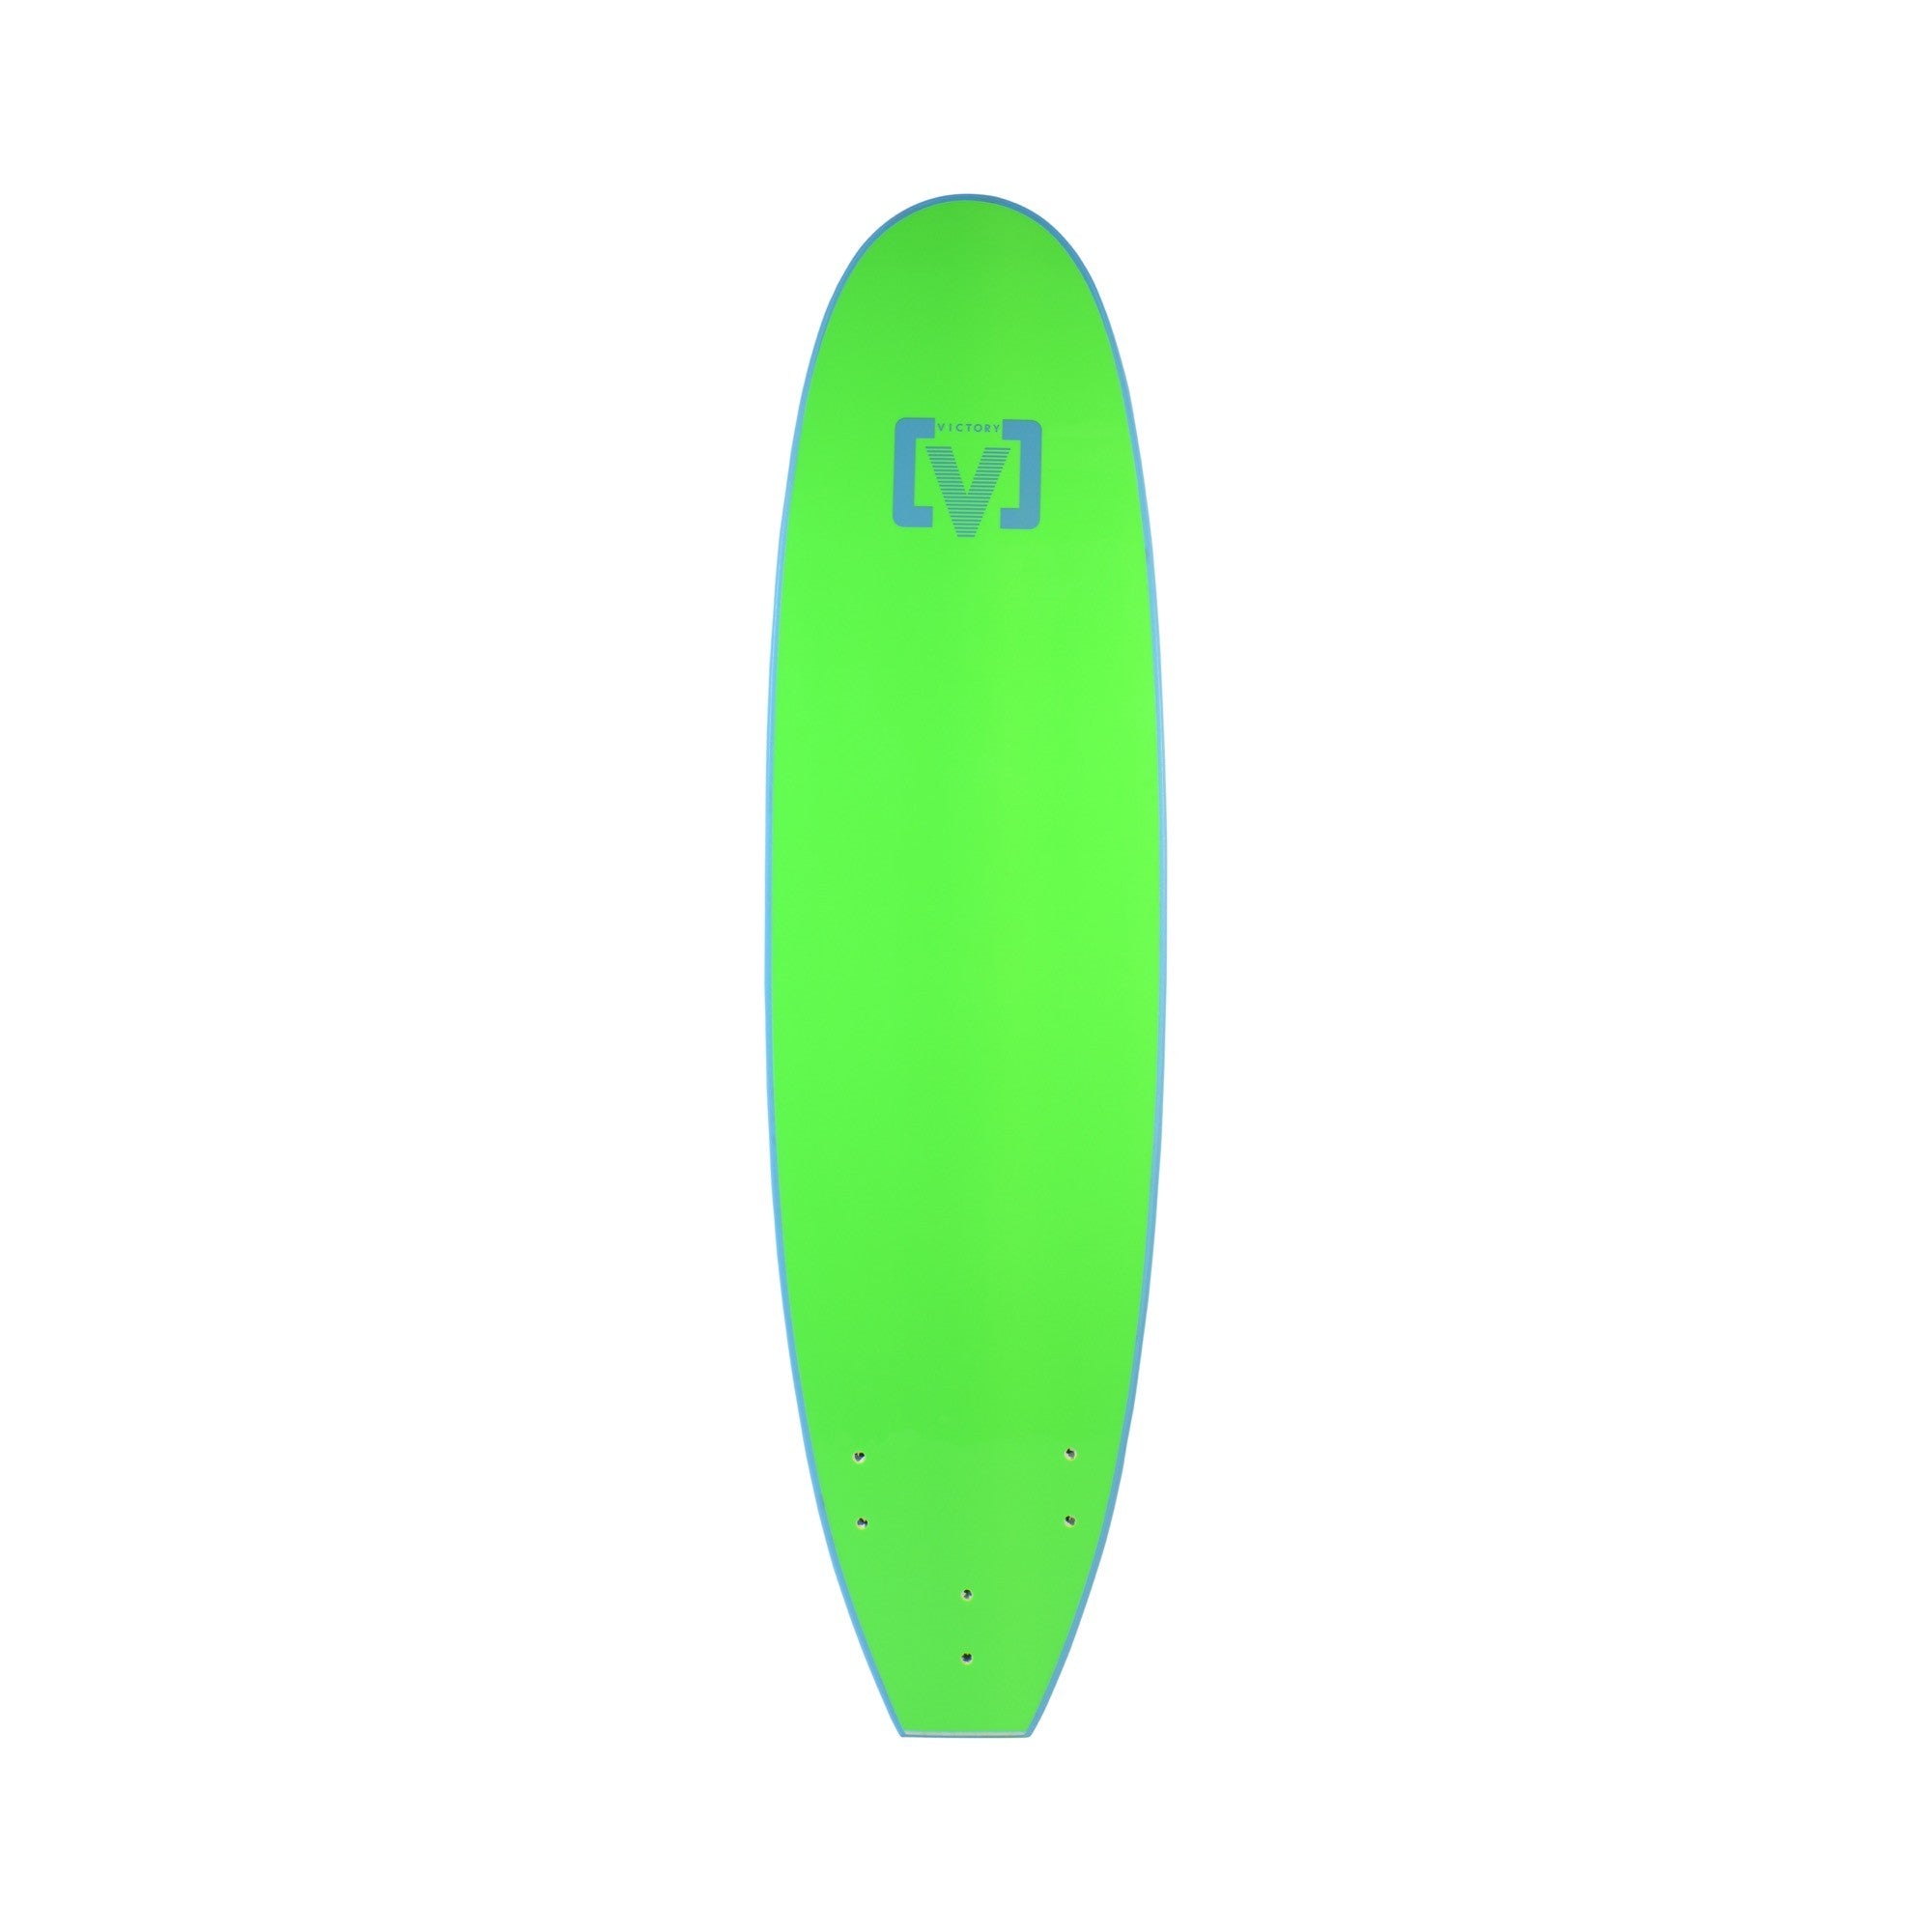 VICTORY - EPS Softboard - Foam surfboard - Malibu 7'0 Wide - Light Blue